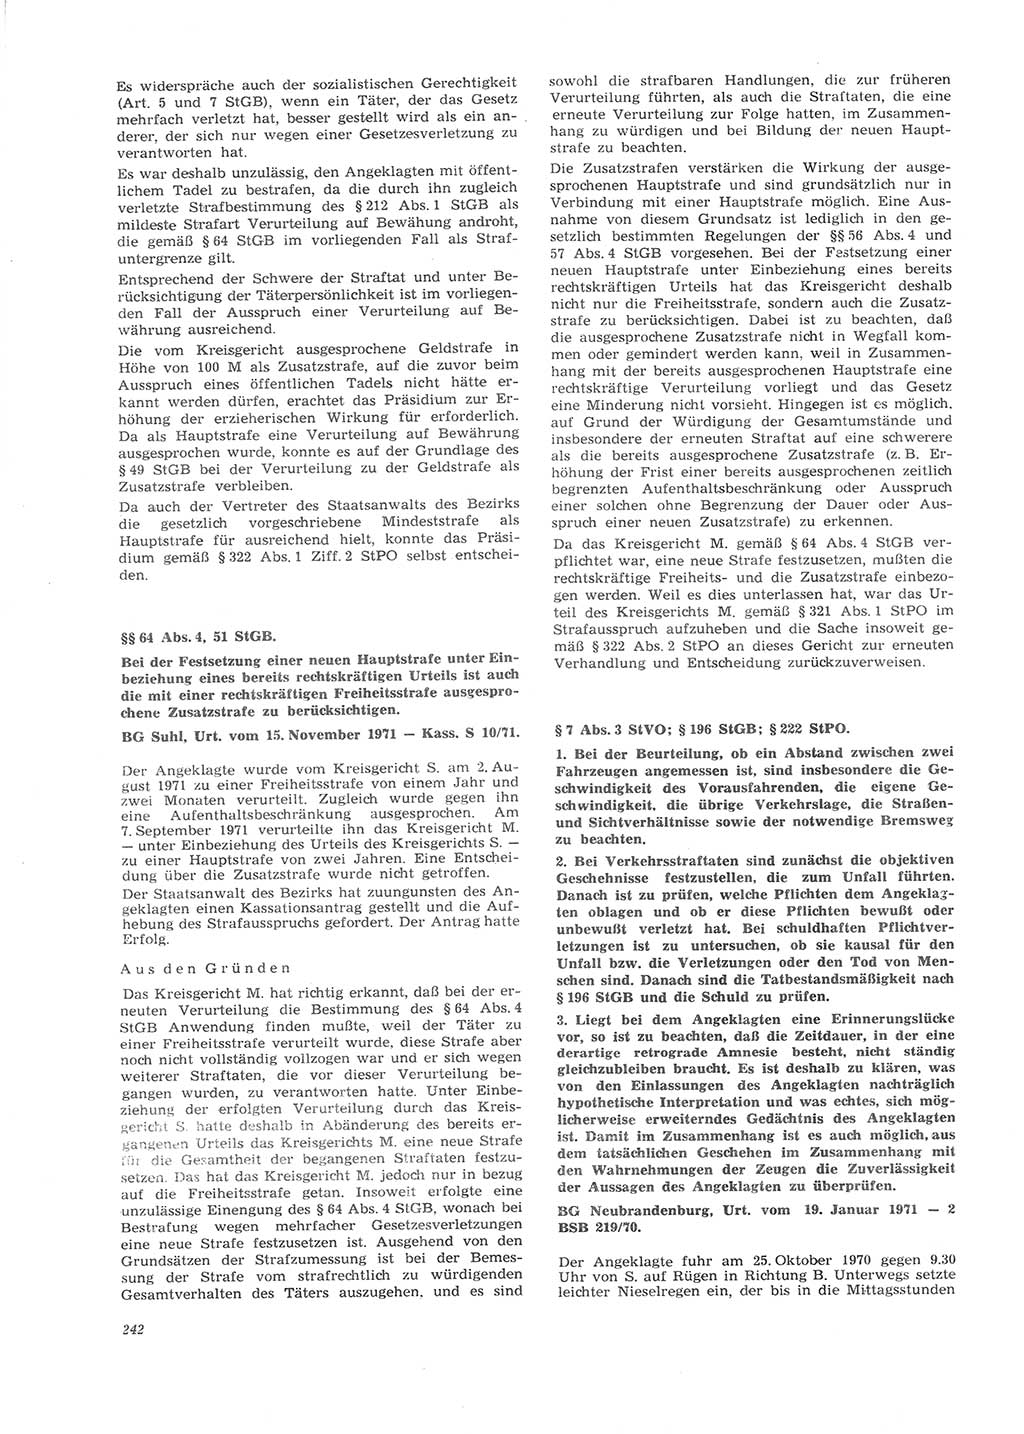 Neue Justiz (NJ), Zeitschrift für Recht und Rechtswissenschaft [Deutsche Demokratische Republik (DDR)], 26. Jahrgang 1972, Seite 242 (NJ DDR 1972, S. 242)